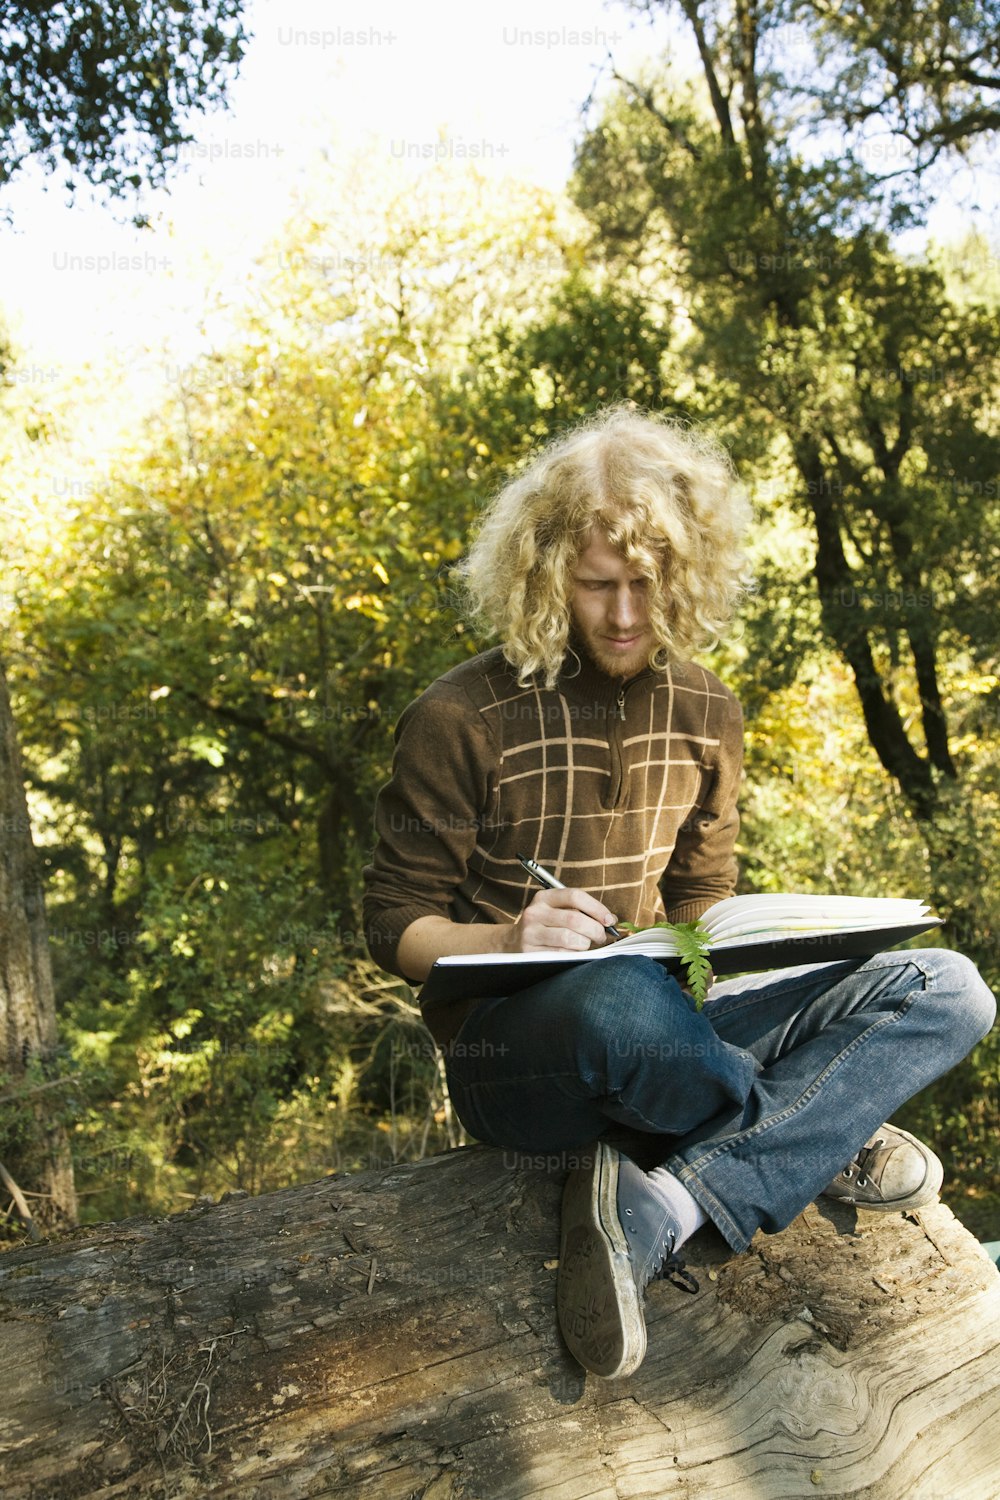 Un homme assis sur une bûche écrivant sur un morceau de bois